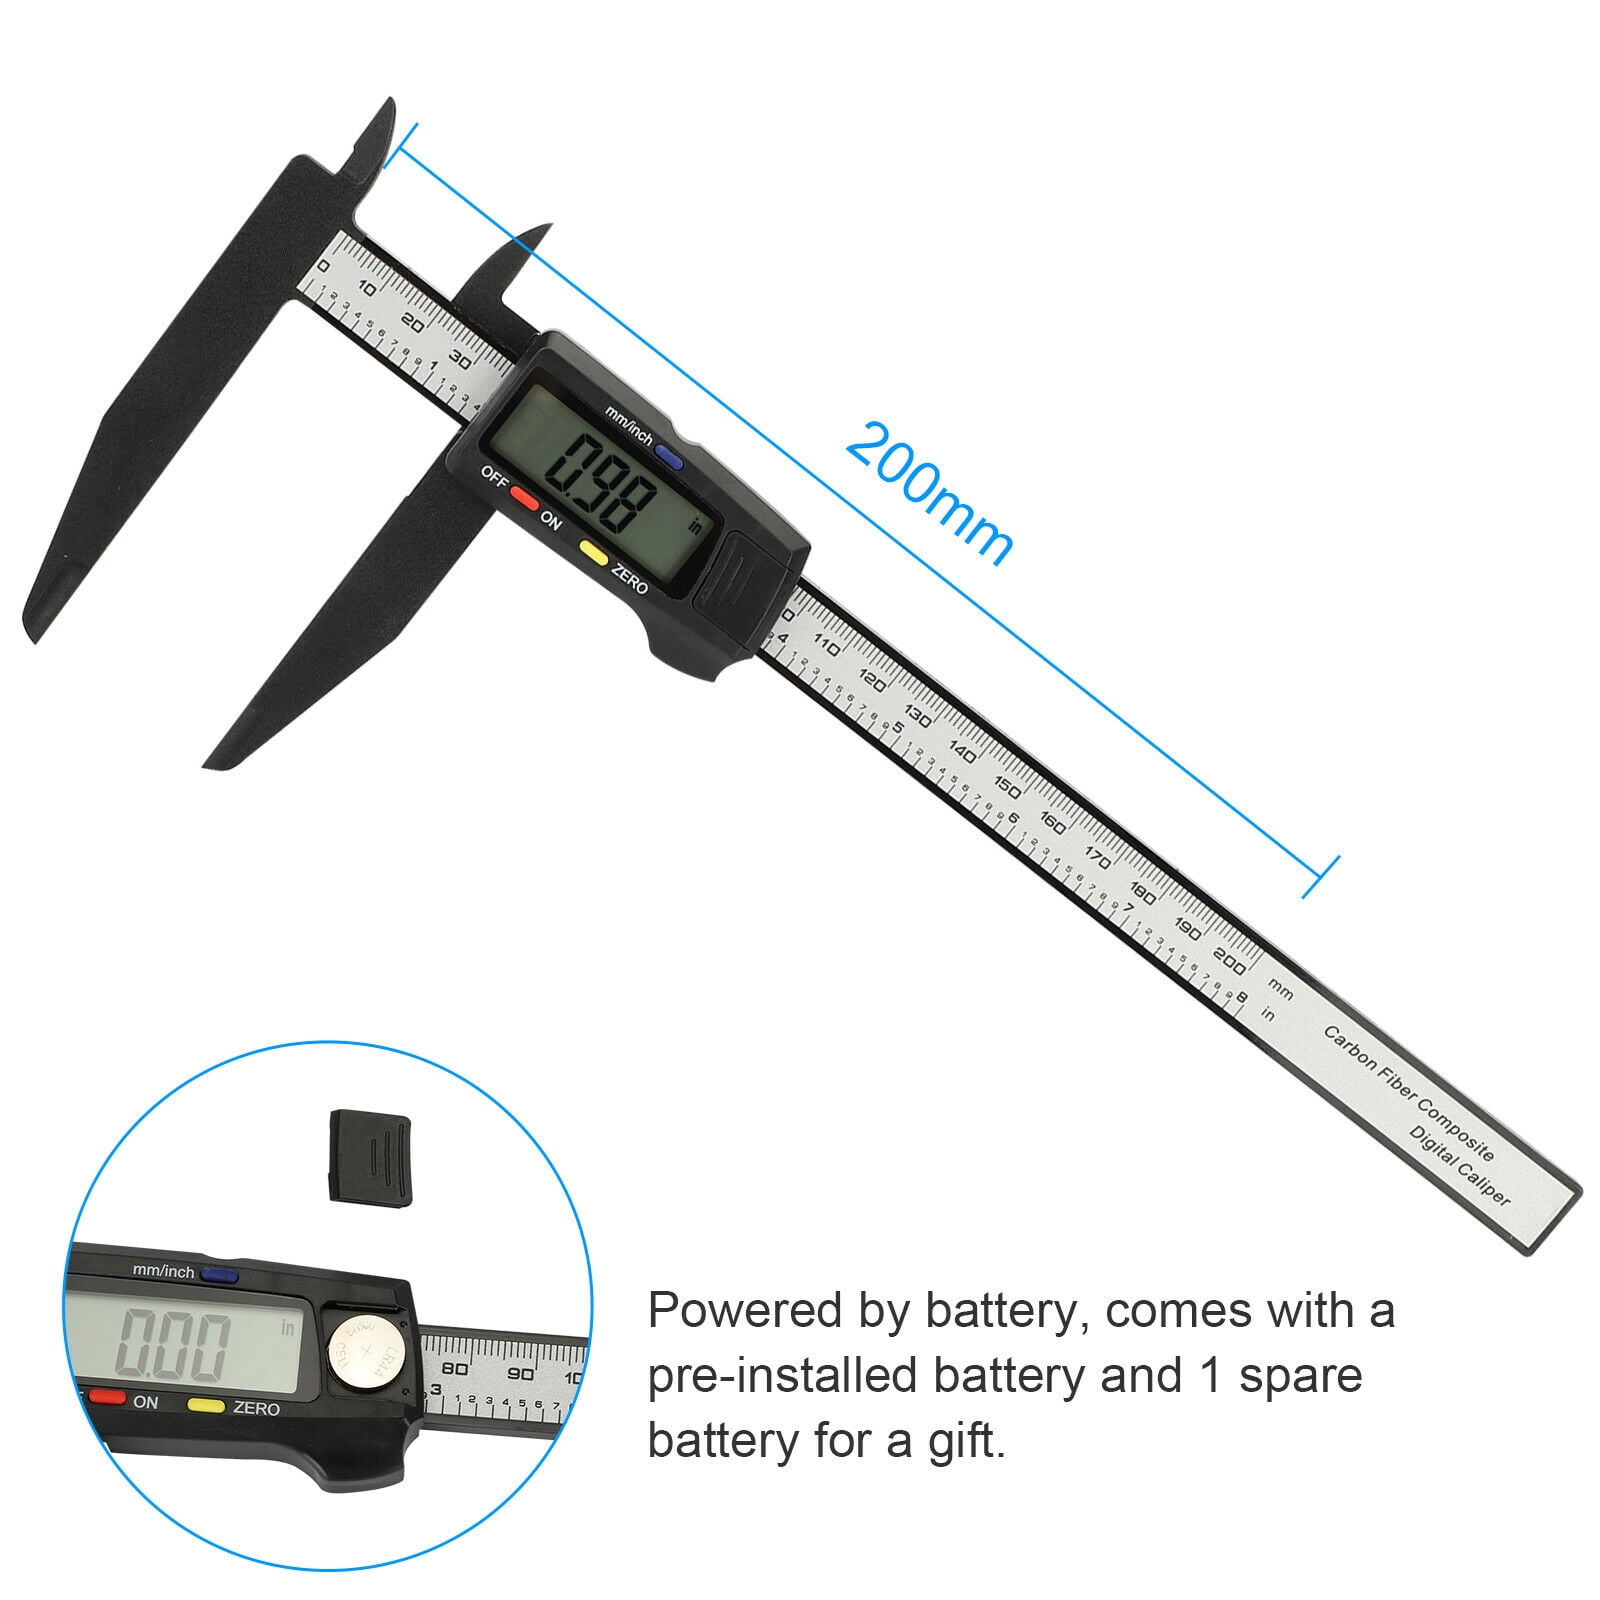 Electronic 8" 200mm LCD Digital Vernier Caliper Micrometer Measure Gauge Ruler